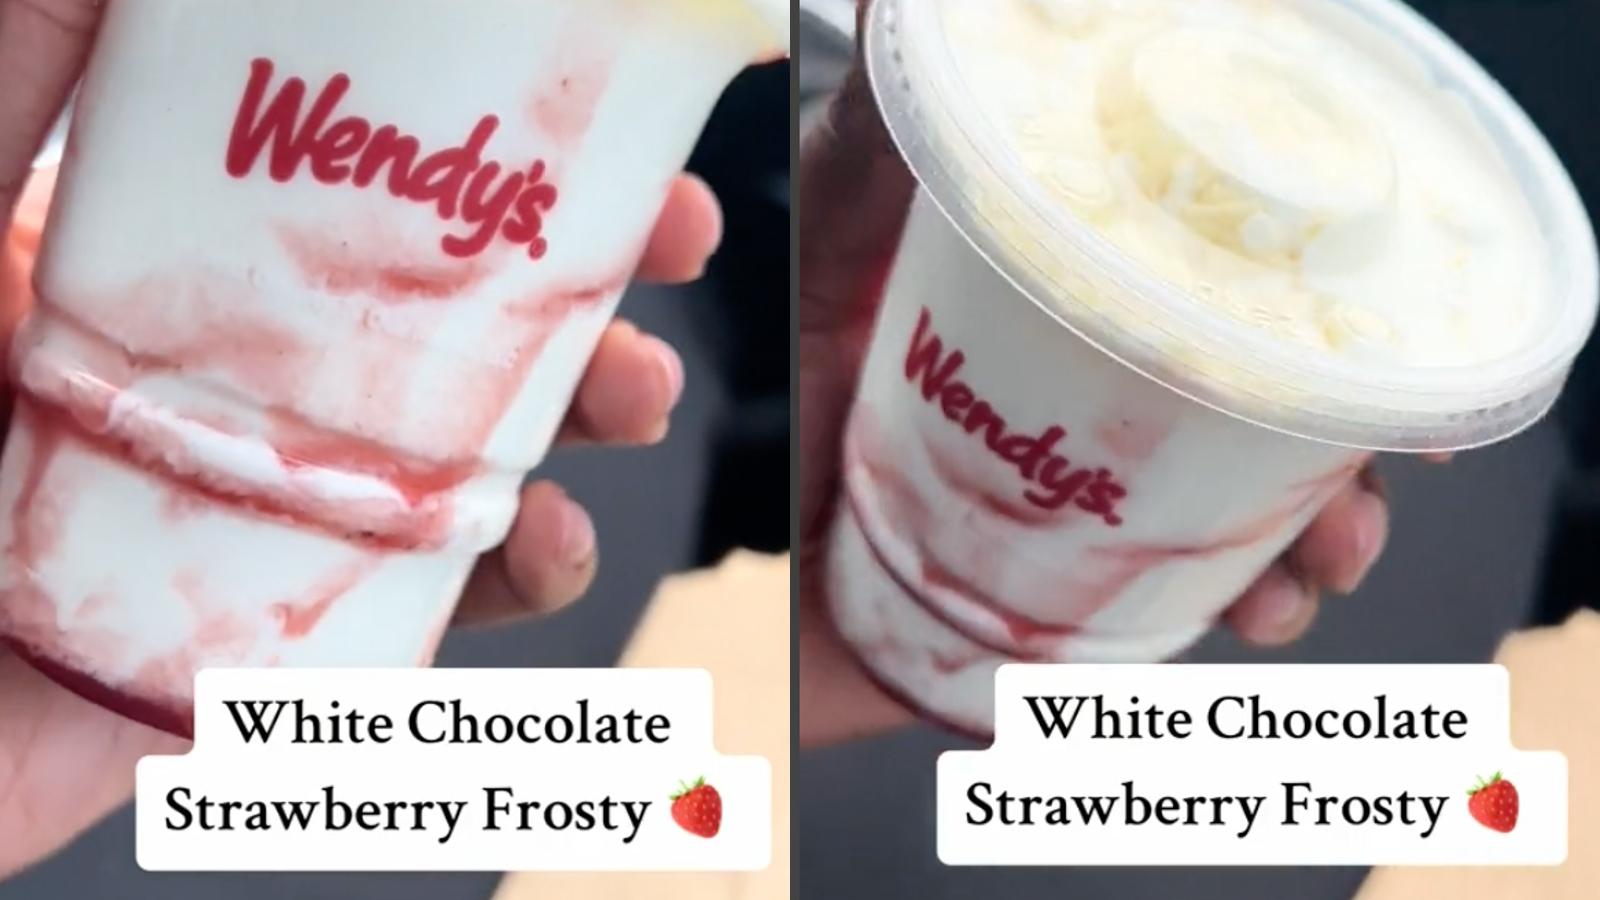 Wendy's Strawberry frosty